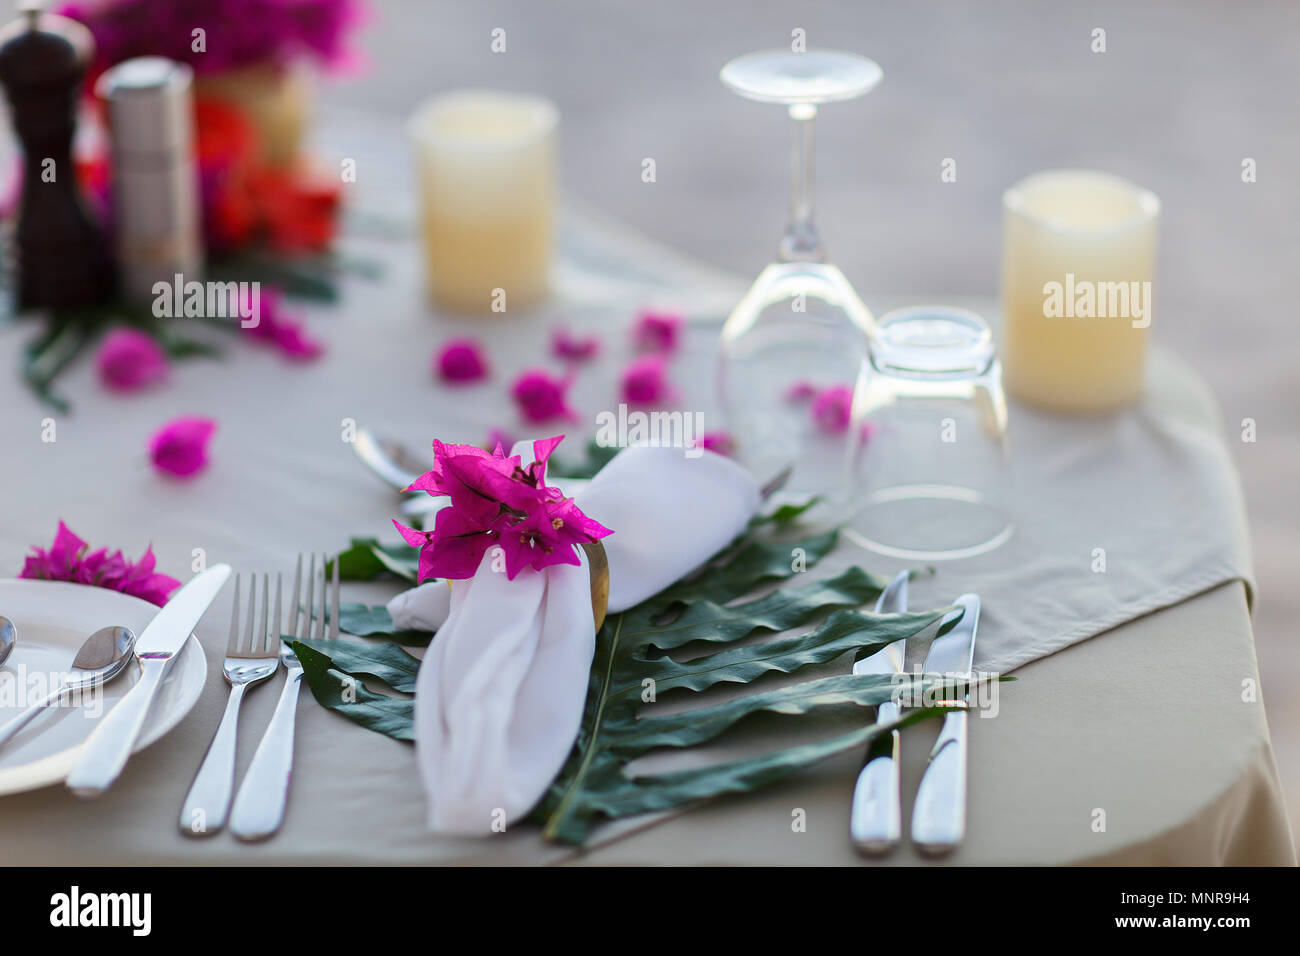 Magnifiquement servi table pour la célébration de mariage ou événement romantique Banque D'Images